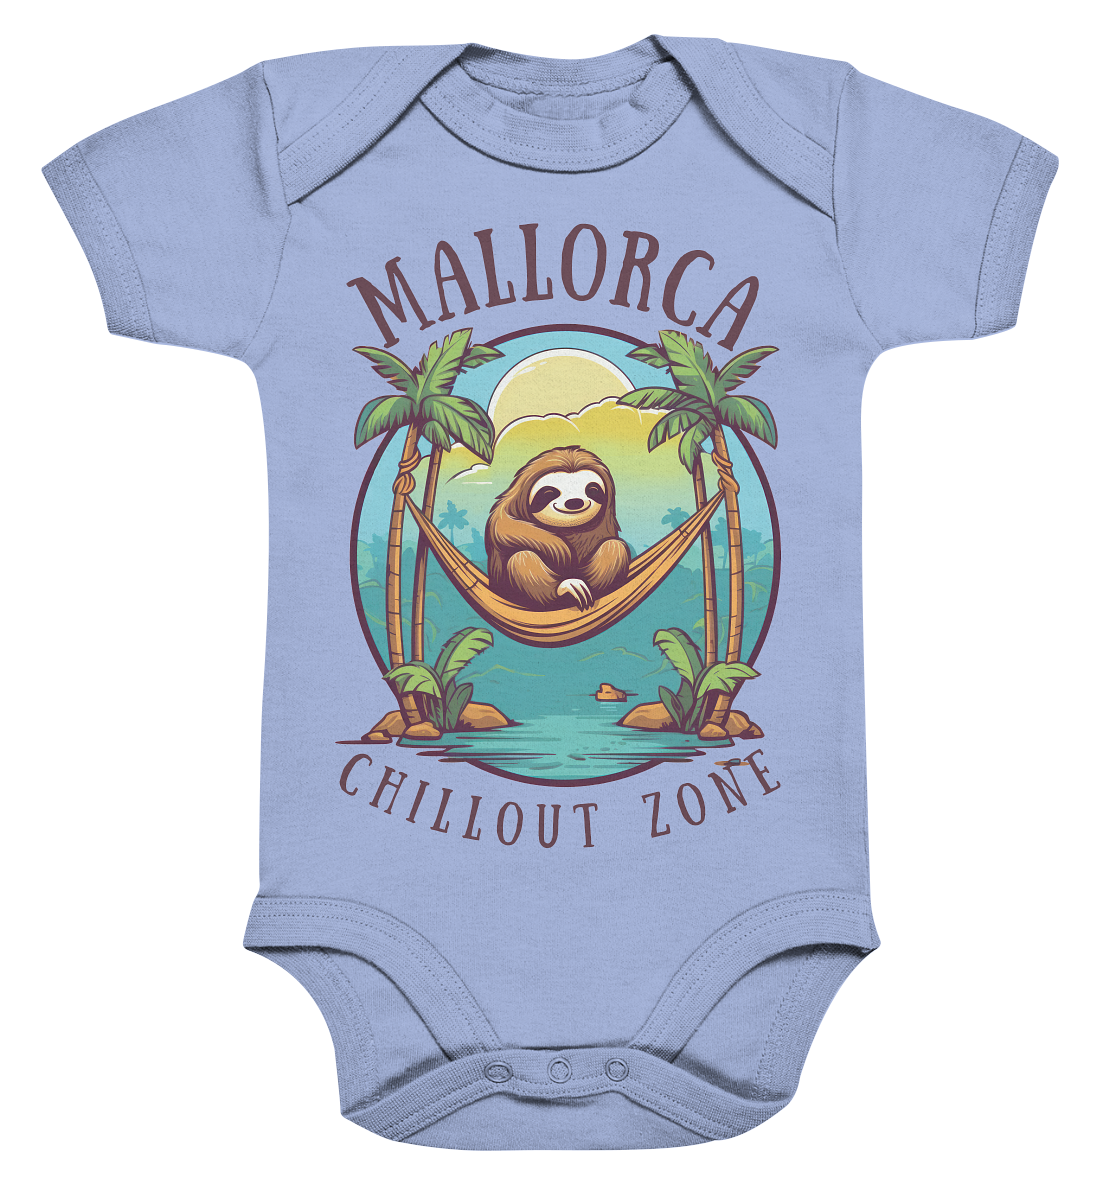 Mallorca Chillout Zone • Baby Bodysuite